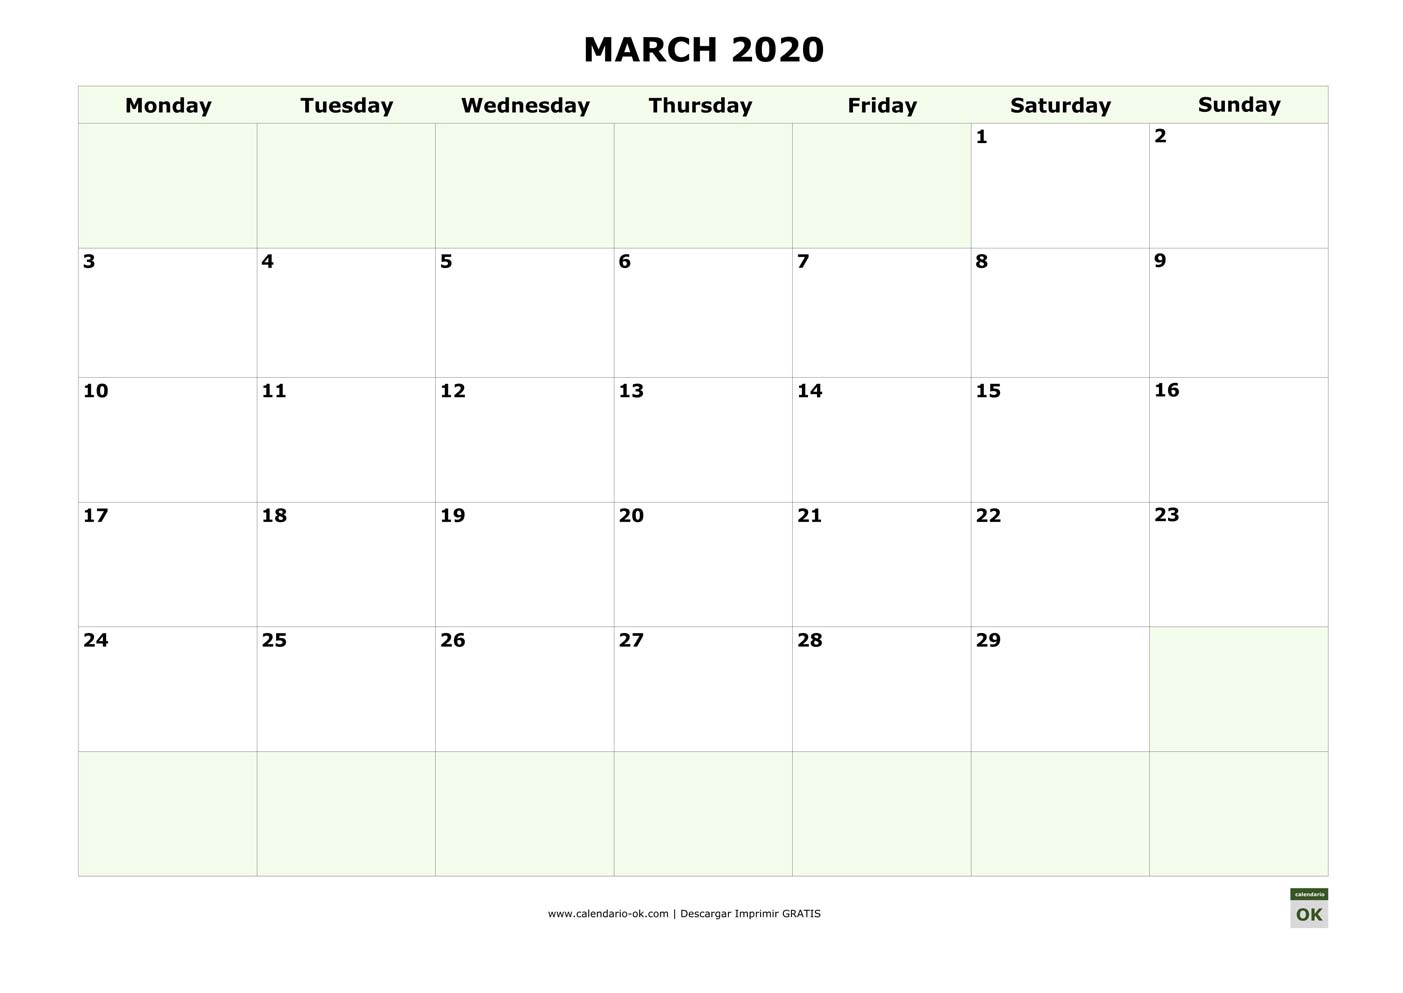 MARZO 2020 calendario en INGLES